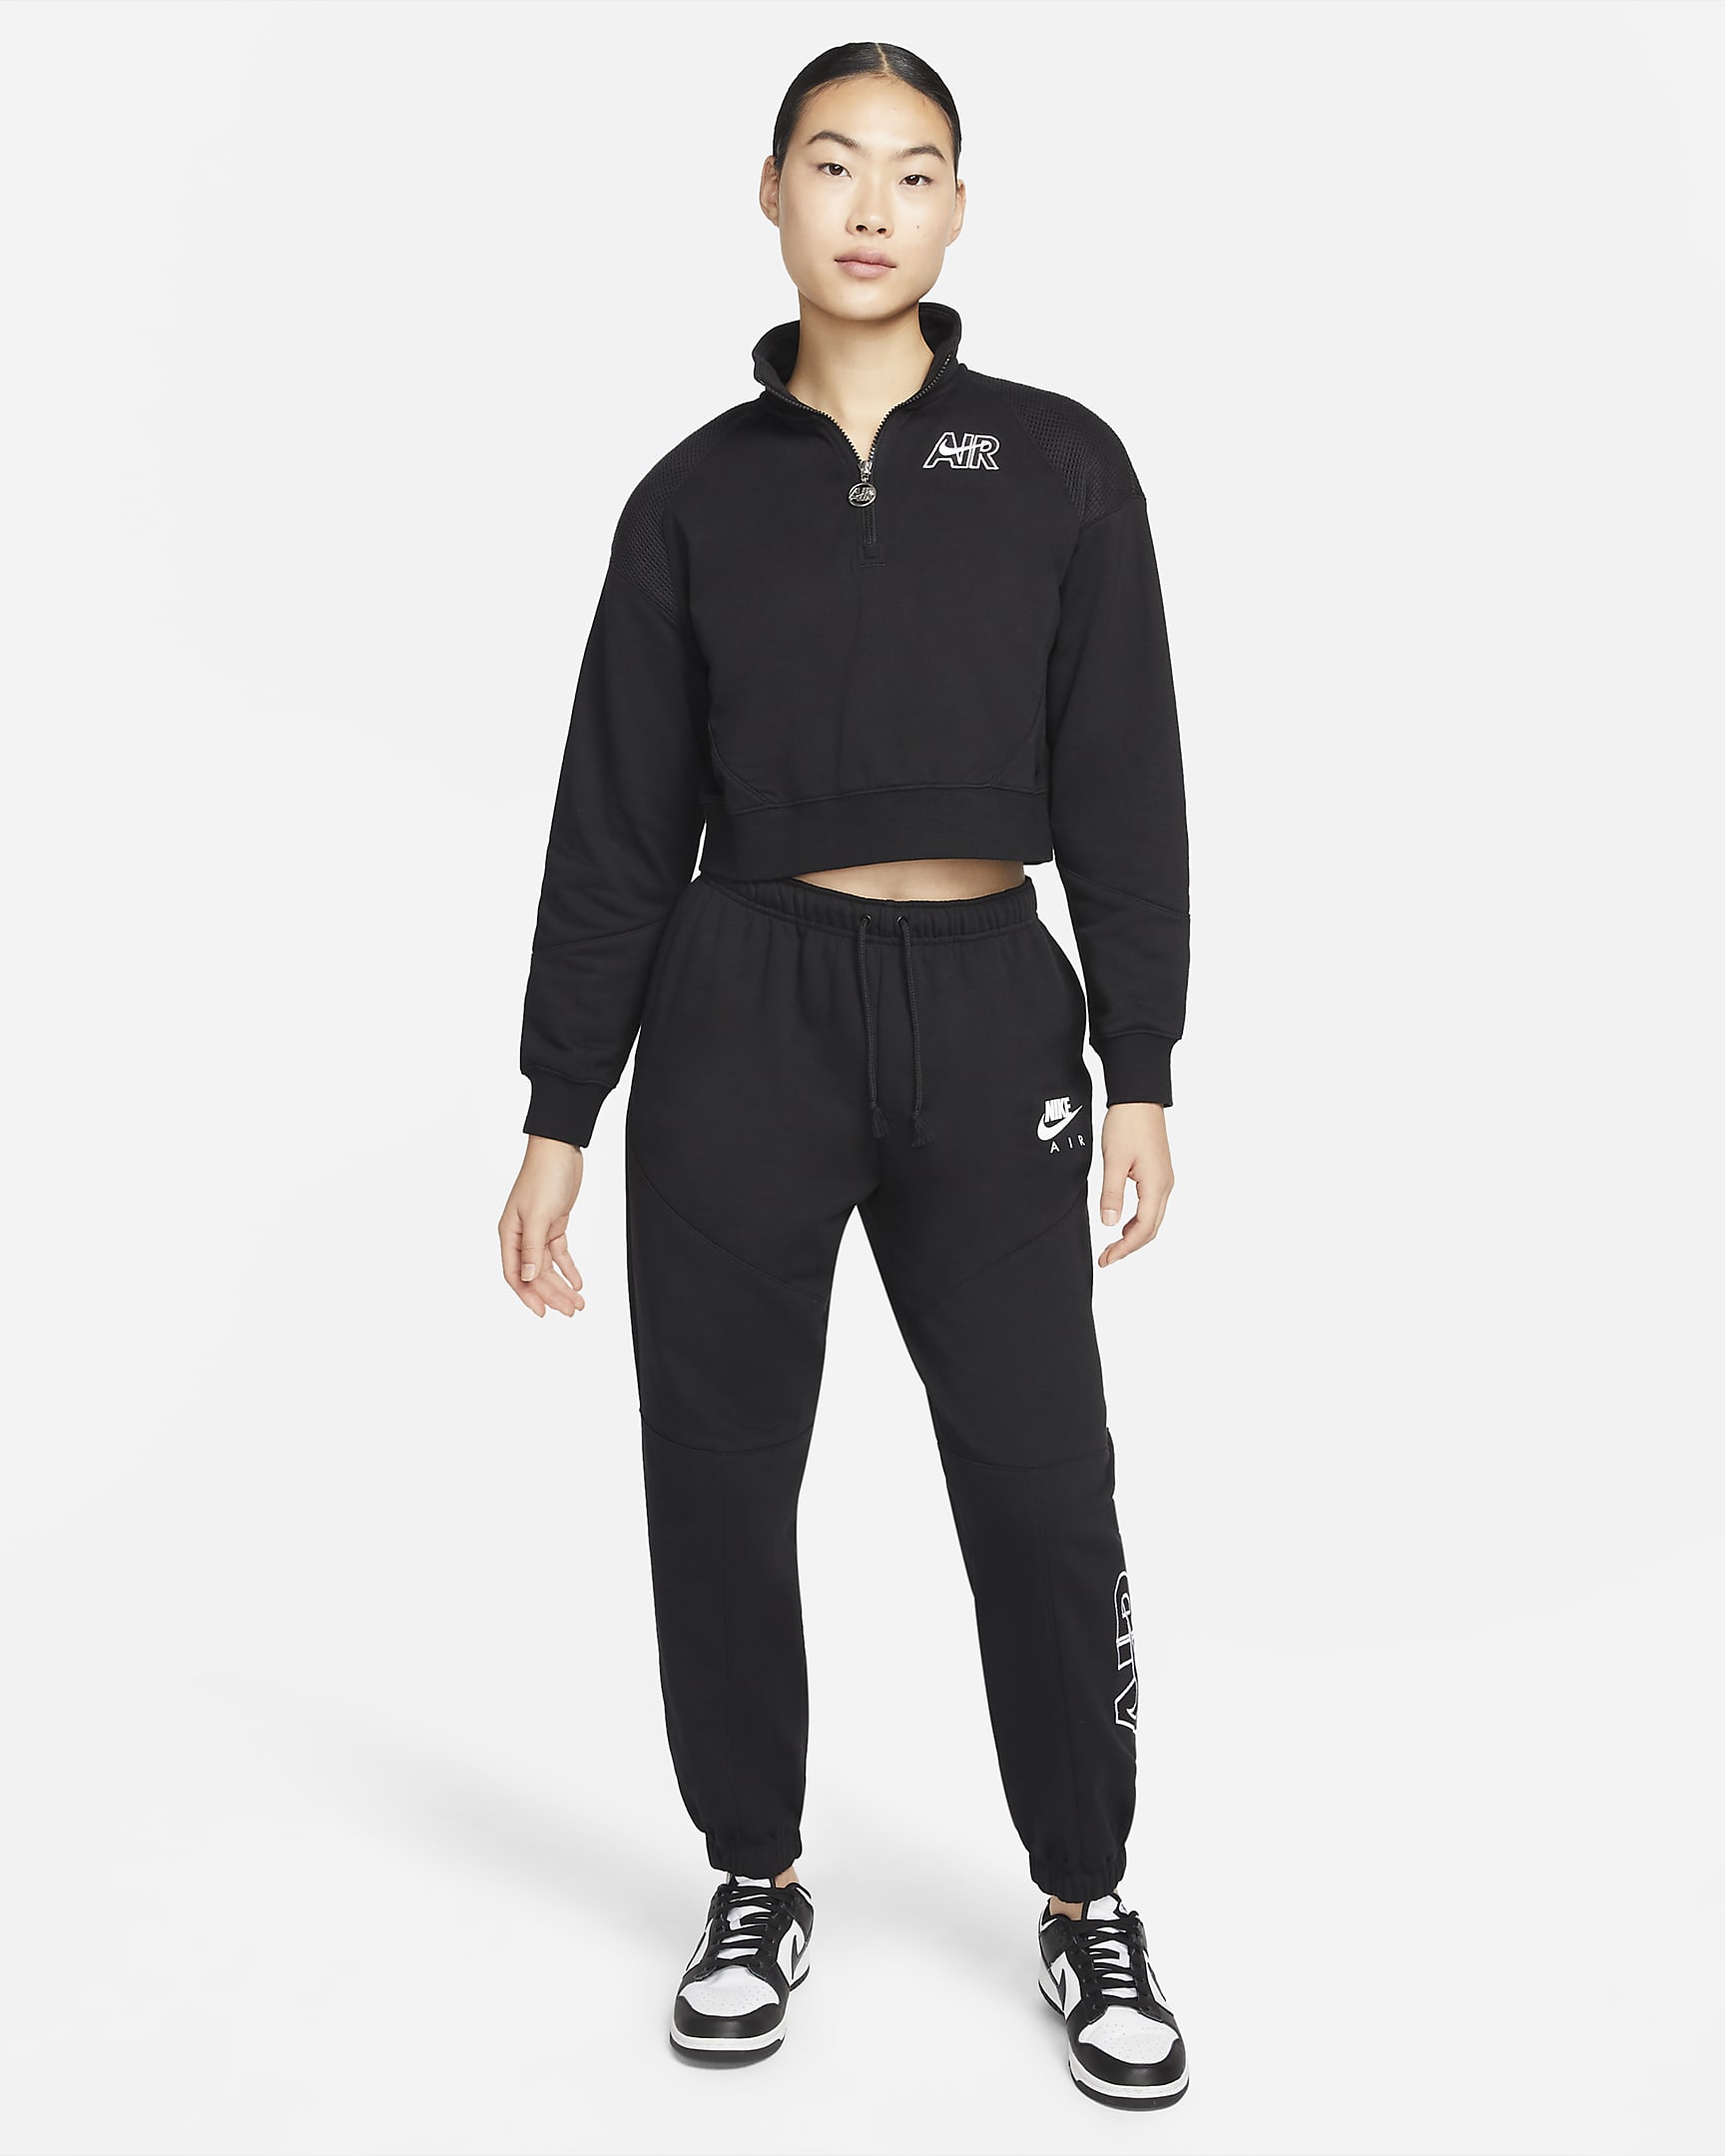 Nike Sportswear Air Women's 1/4-Zip Fleece Top. Nike ID